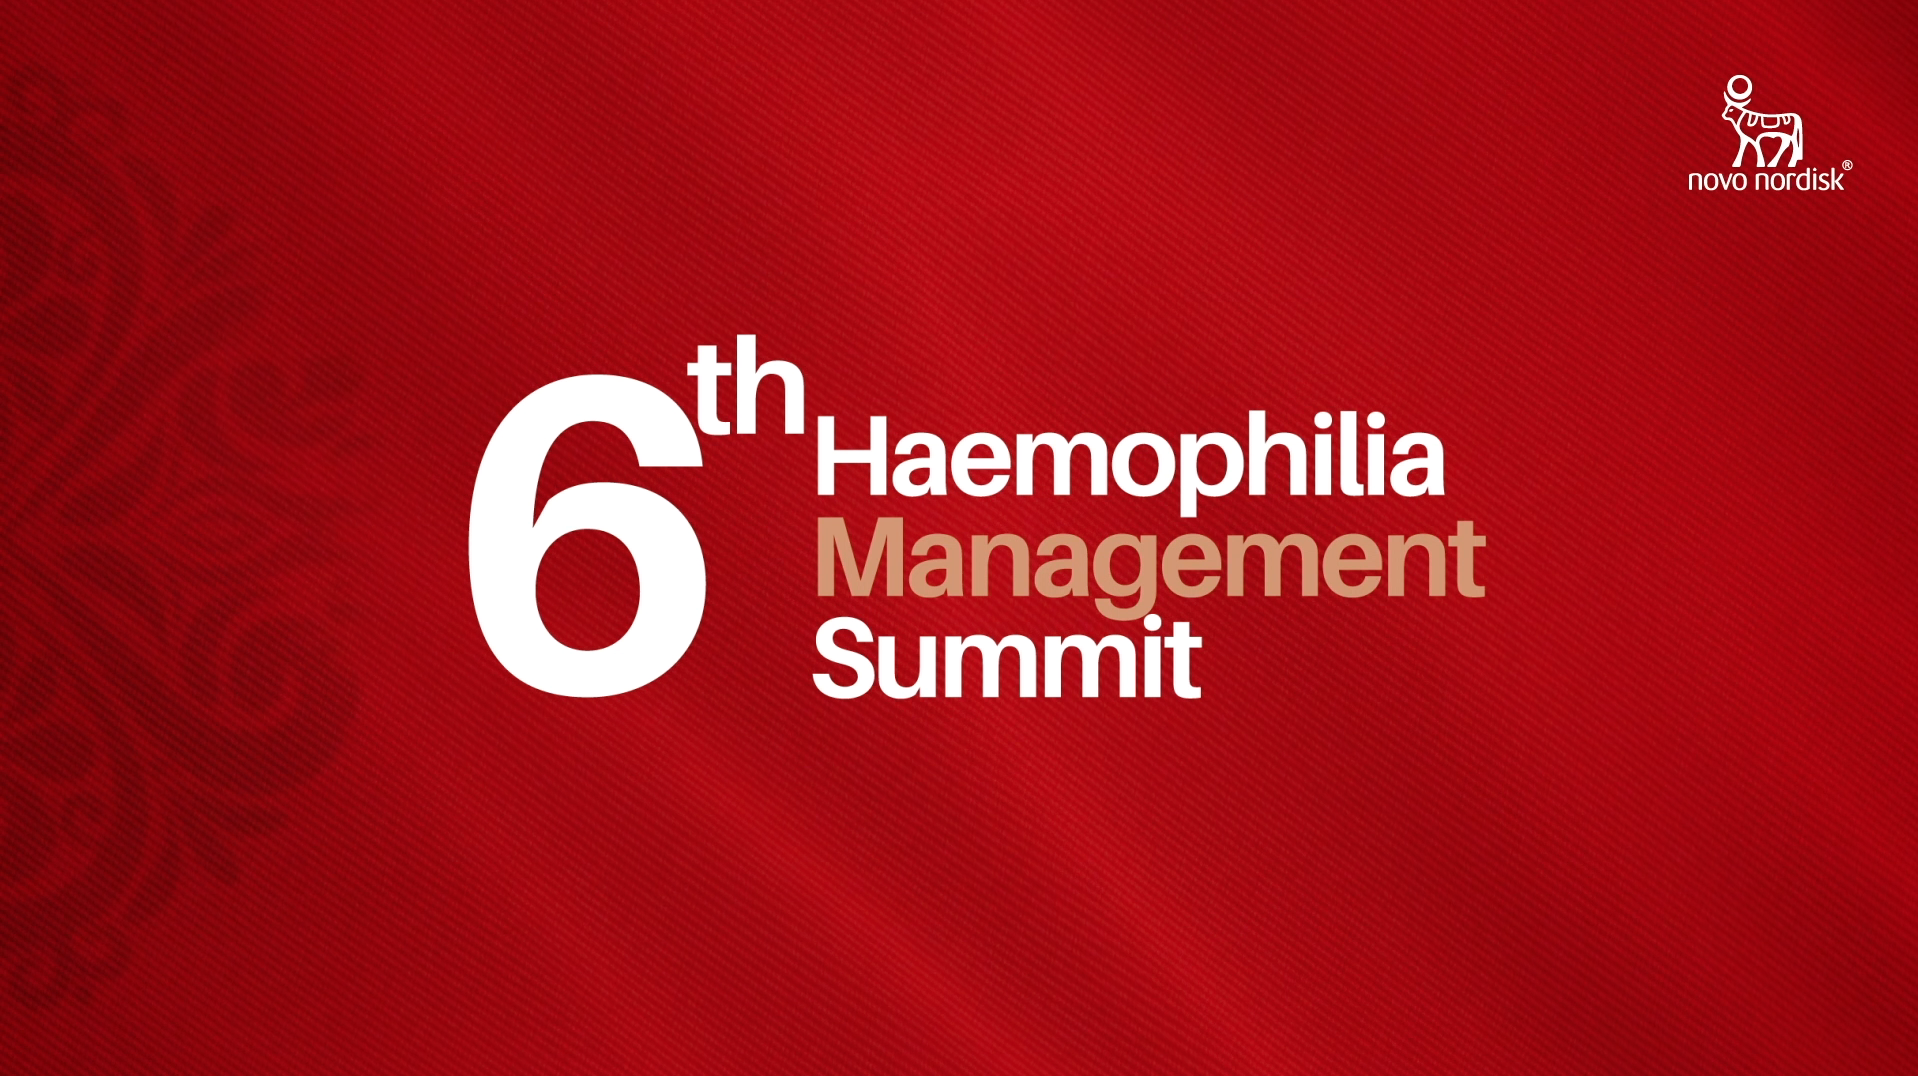 Novo Nordisk (Haemophilia Management Summit)